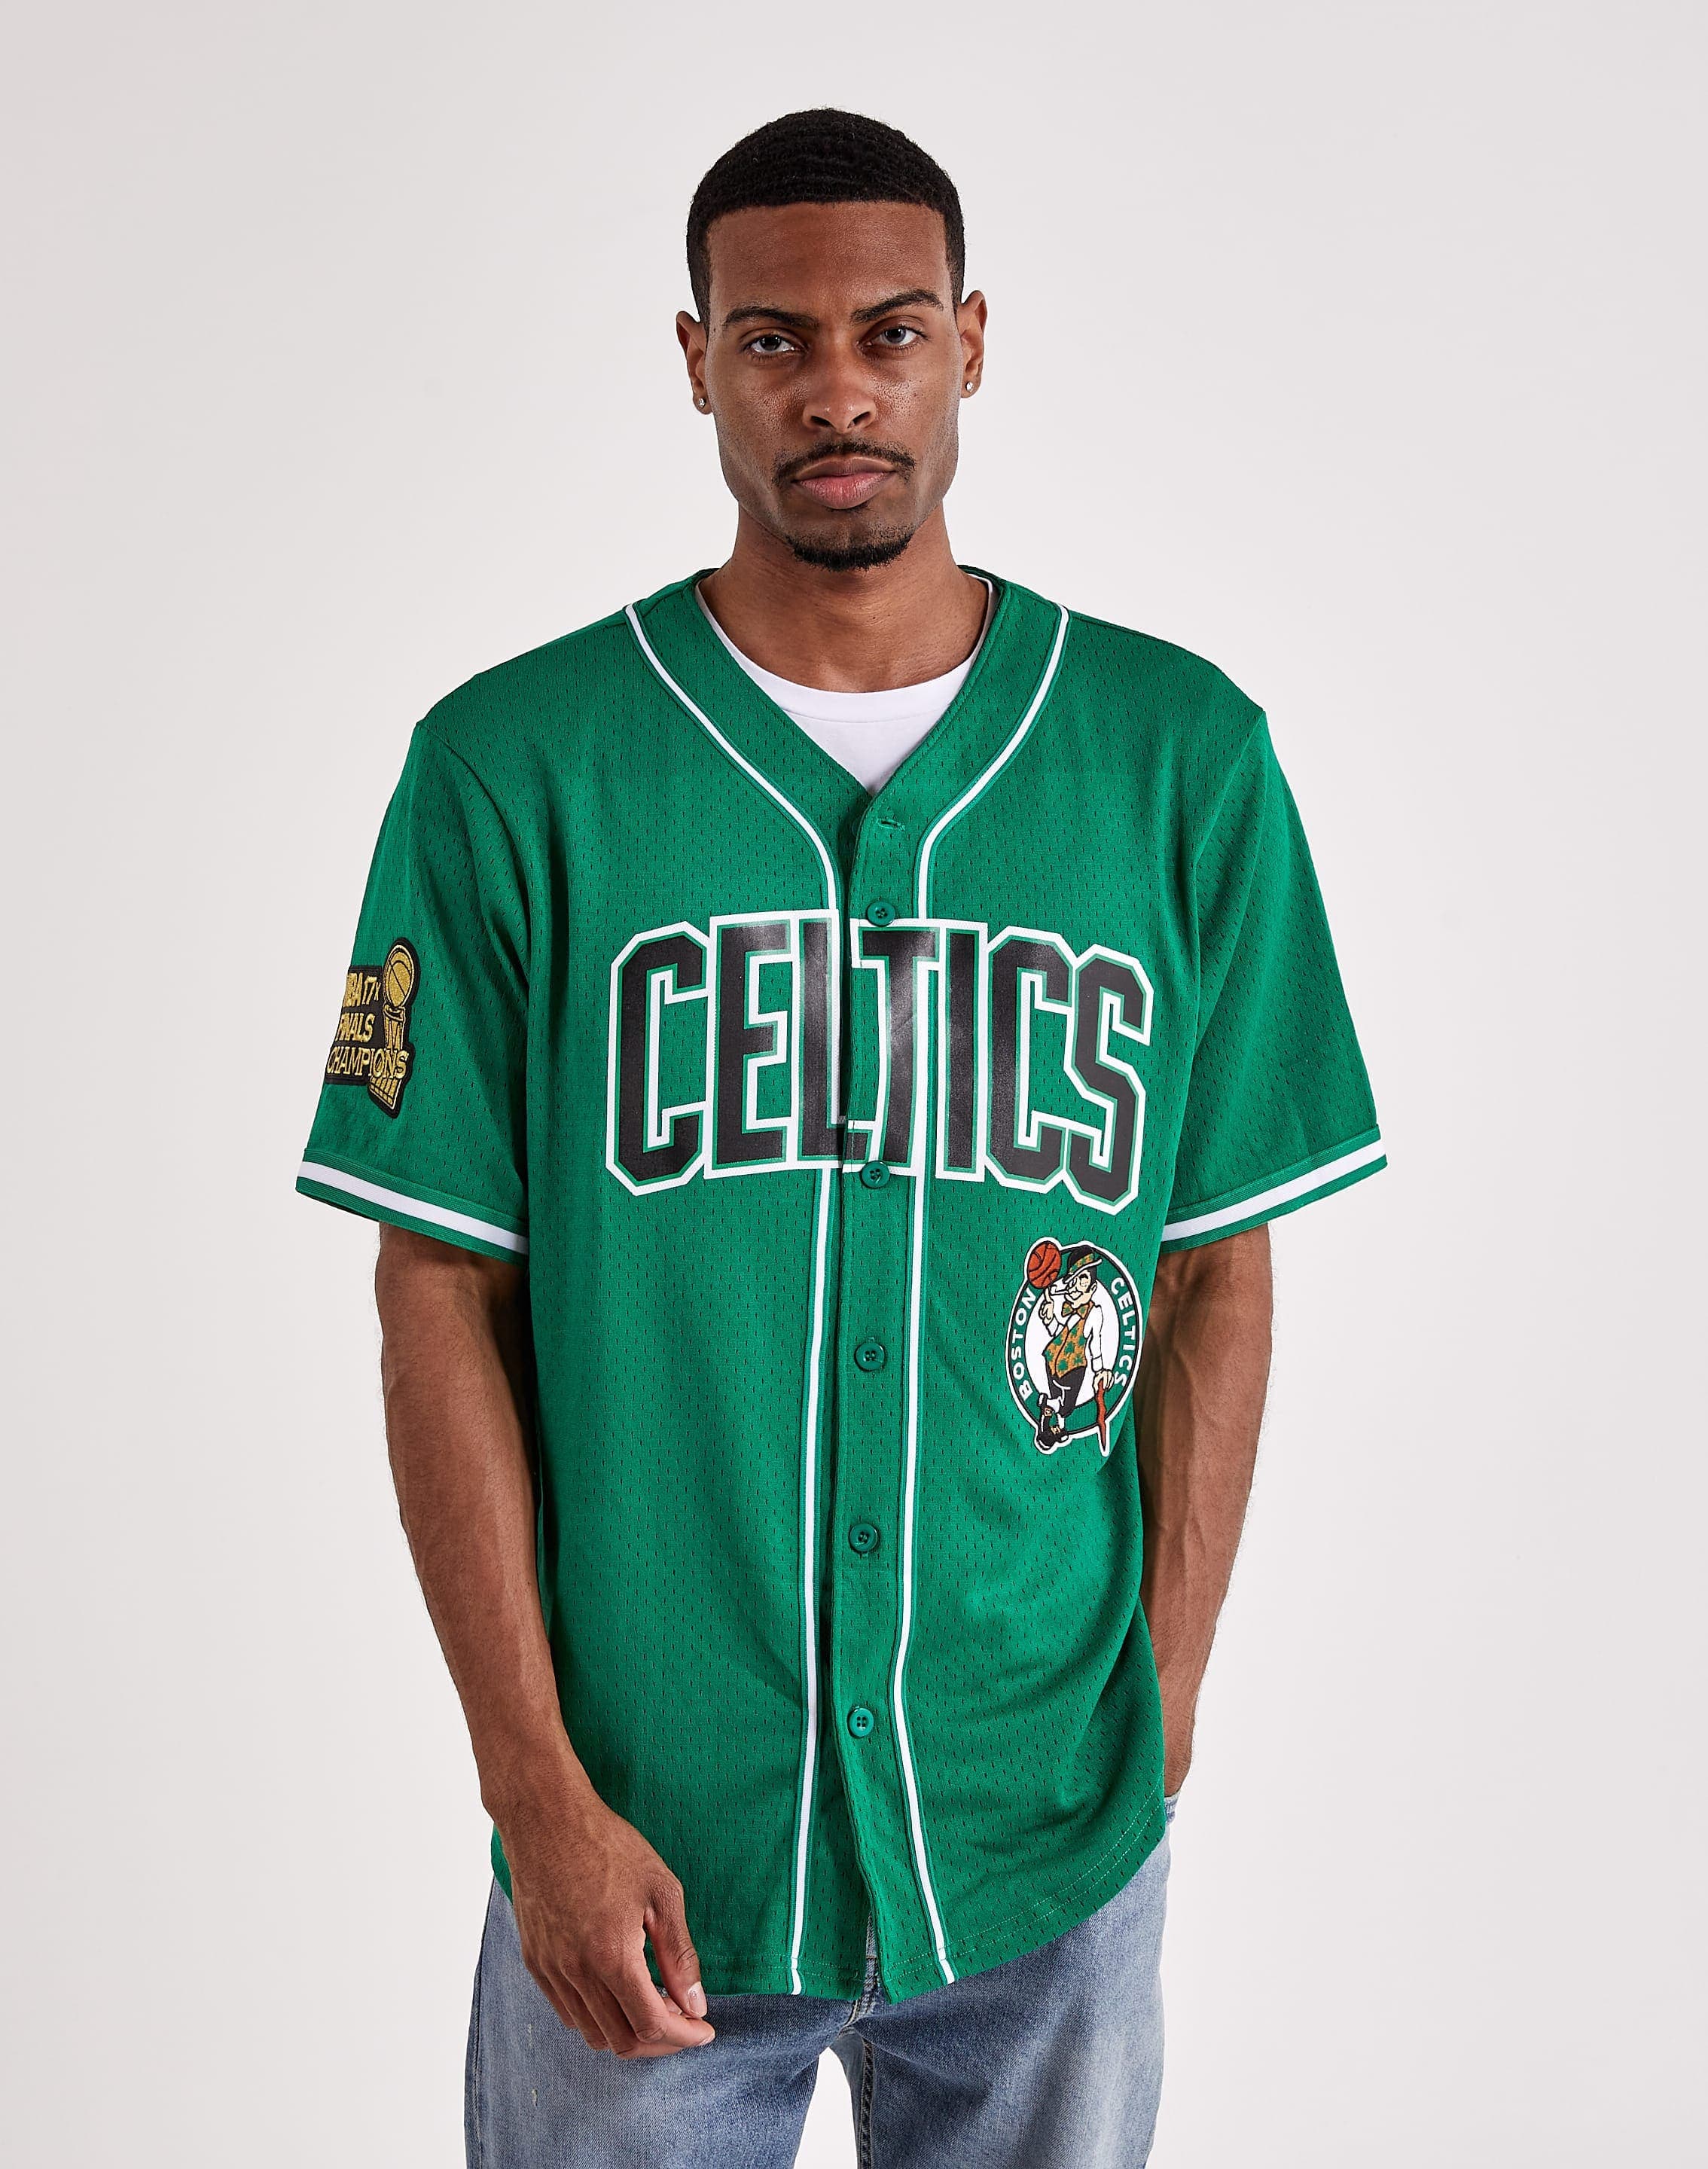 Boston Celtics Gear: Shop Celtics Merchandise to Show Your Pride